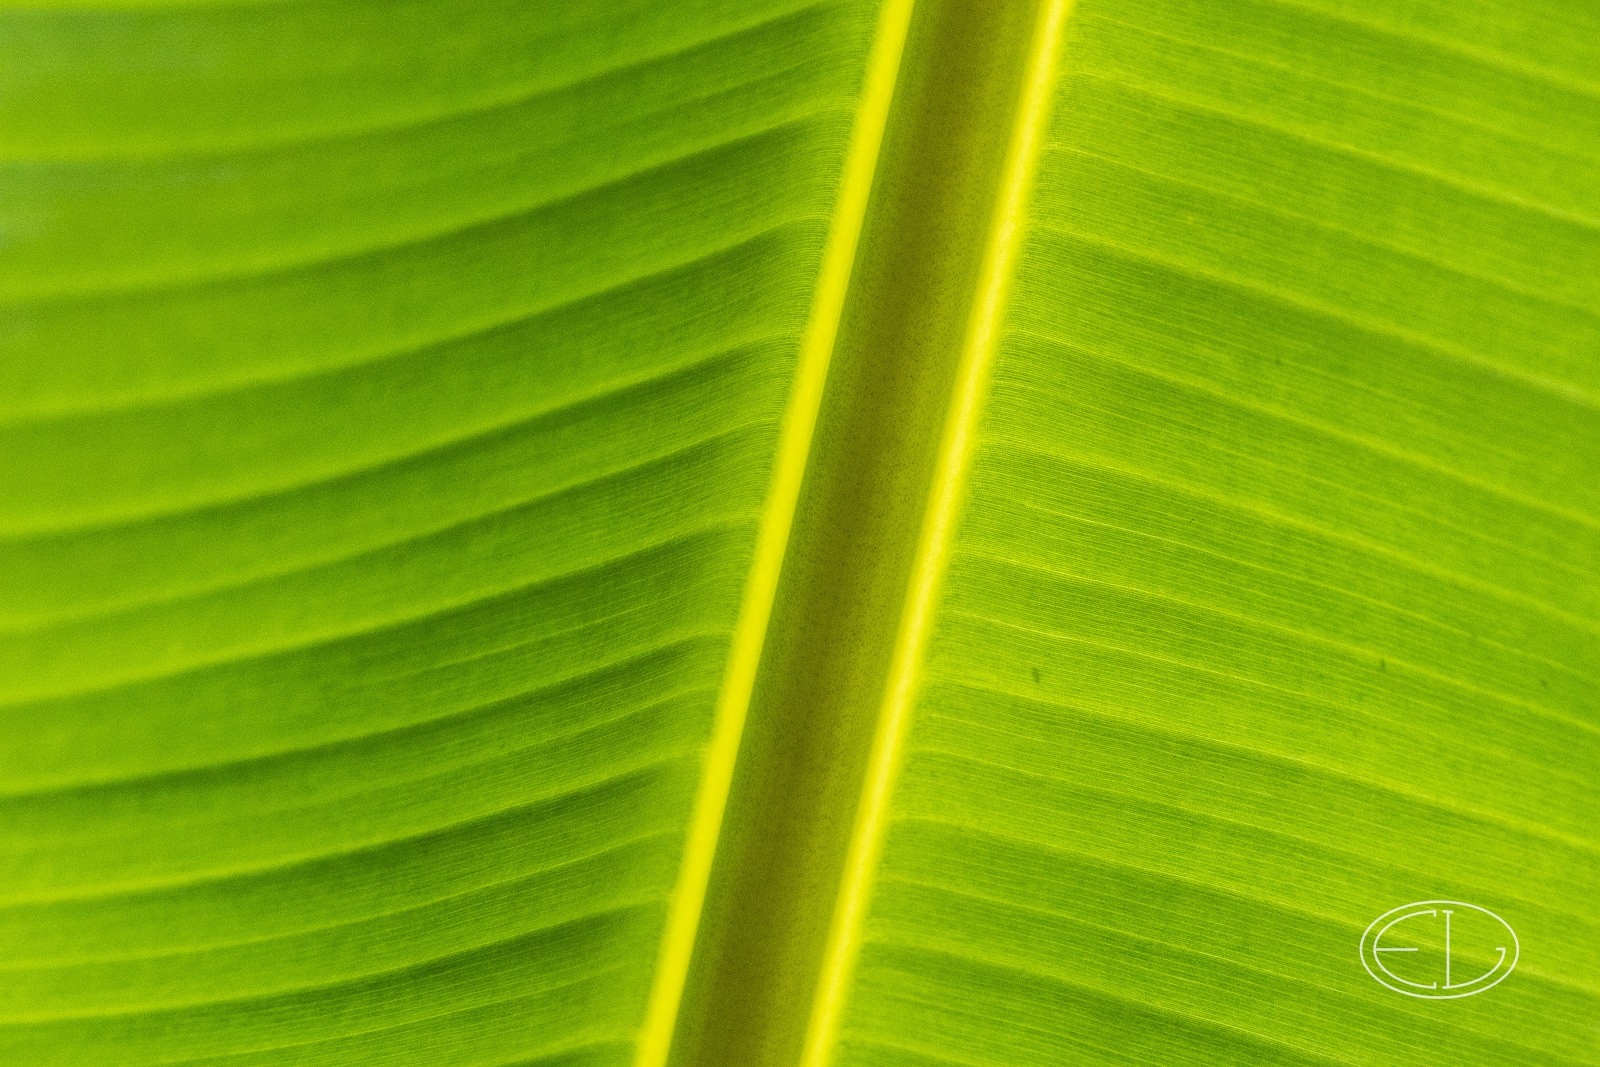 R7_C4337 Banana leaf.jpg